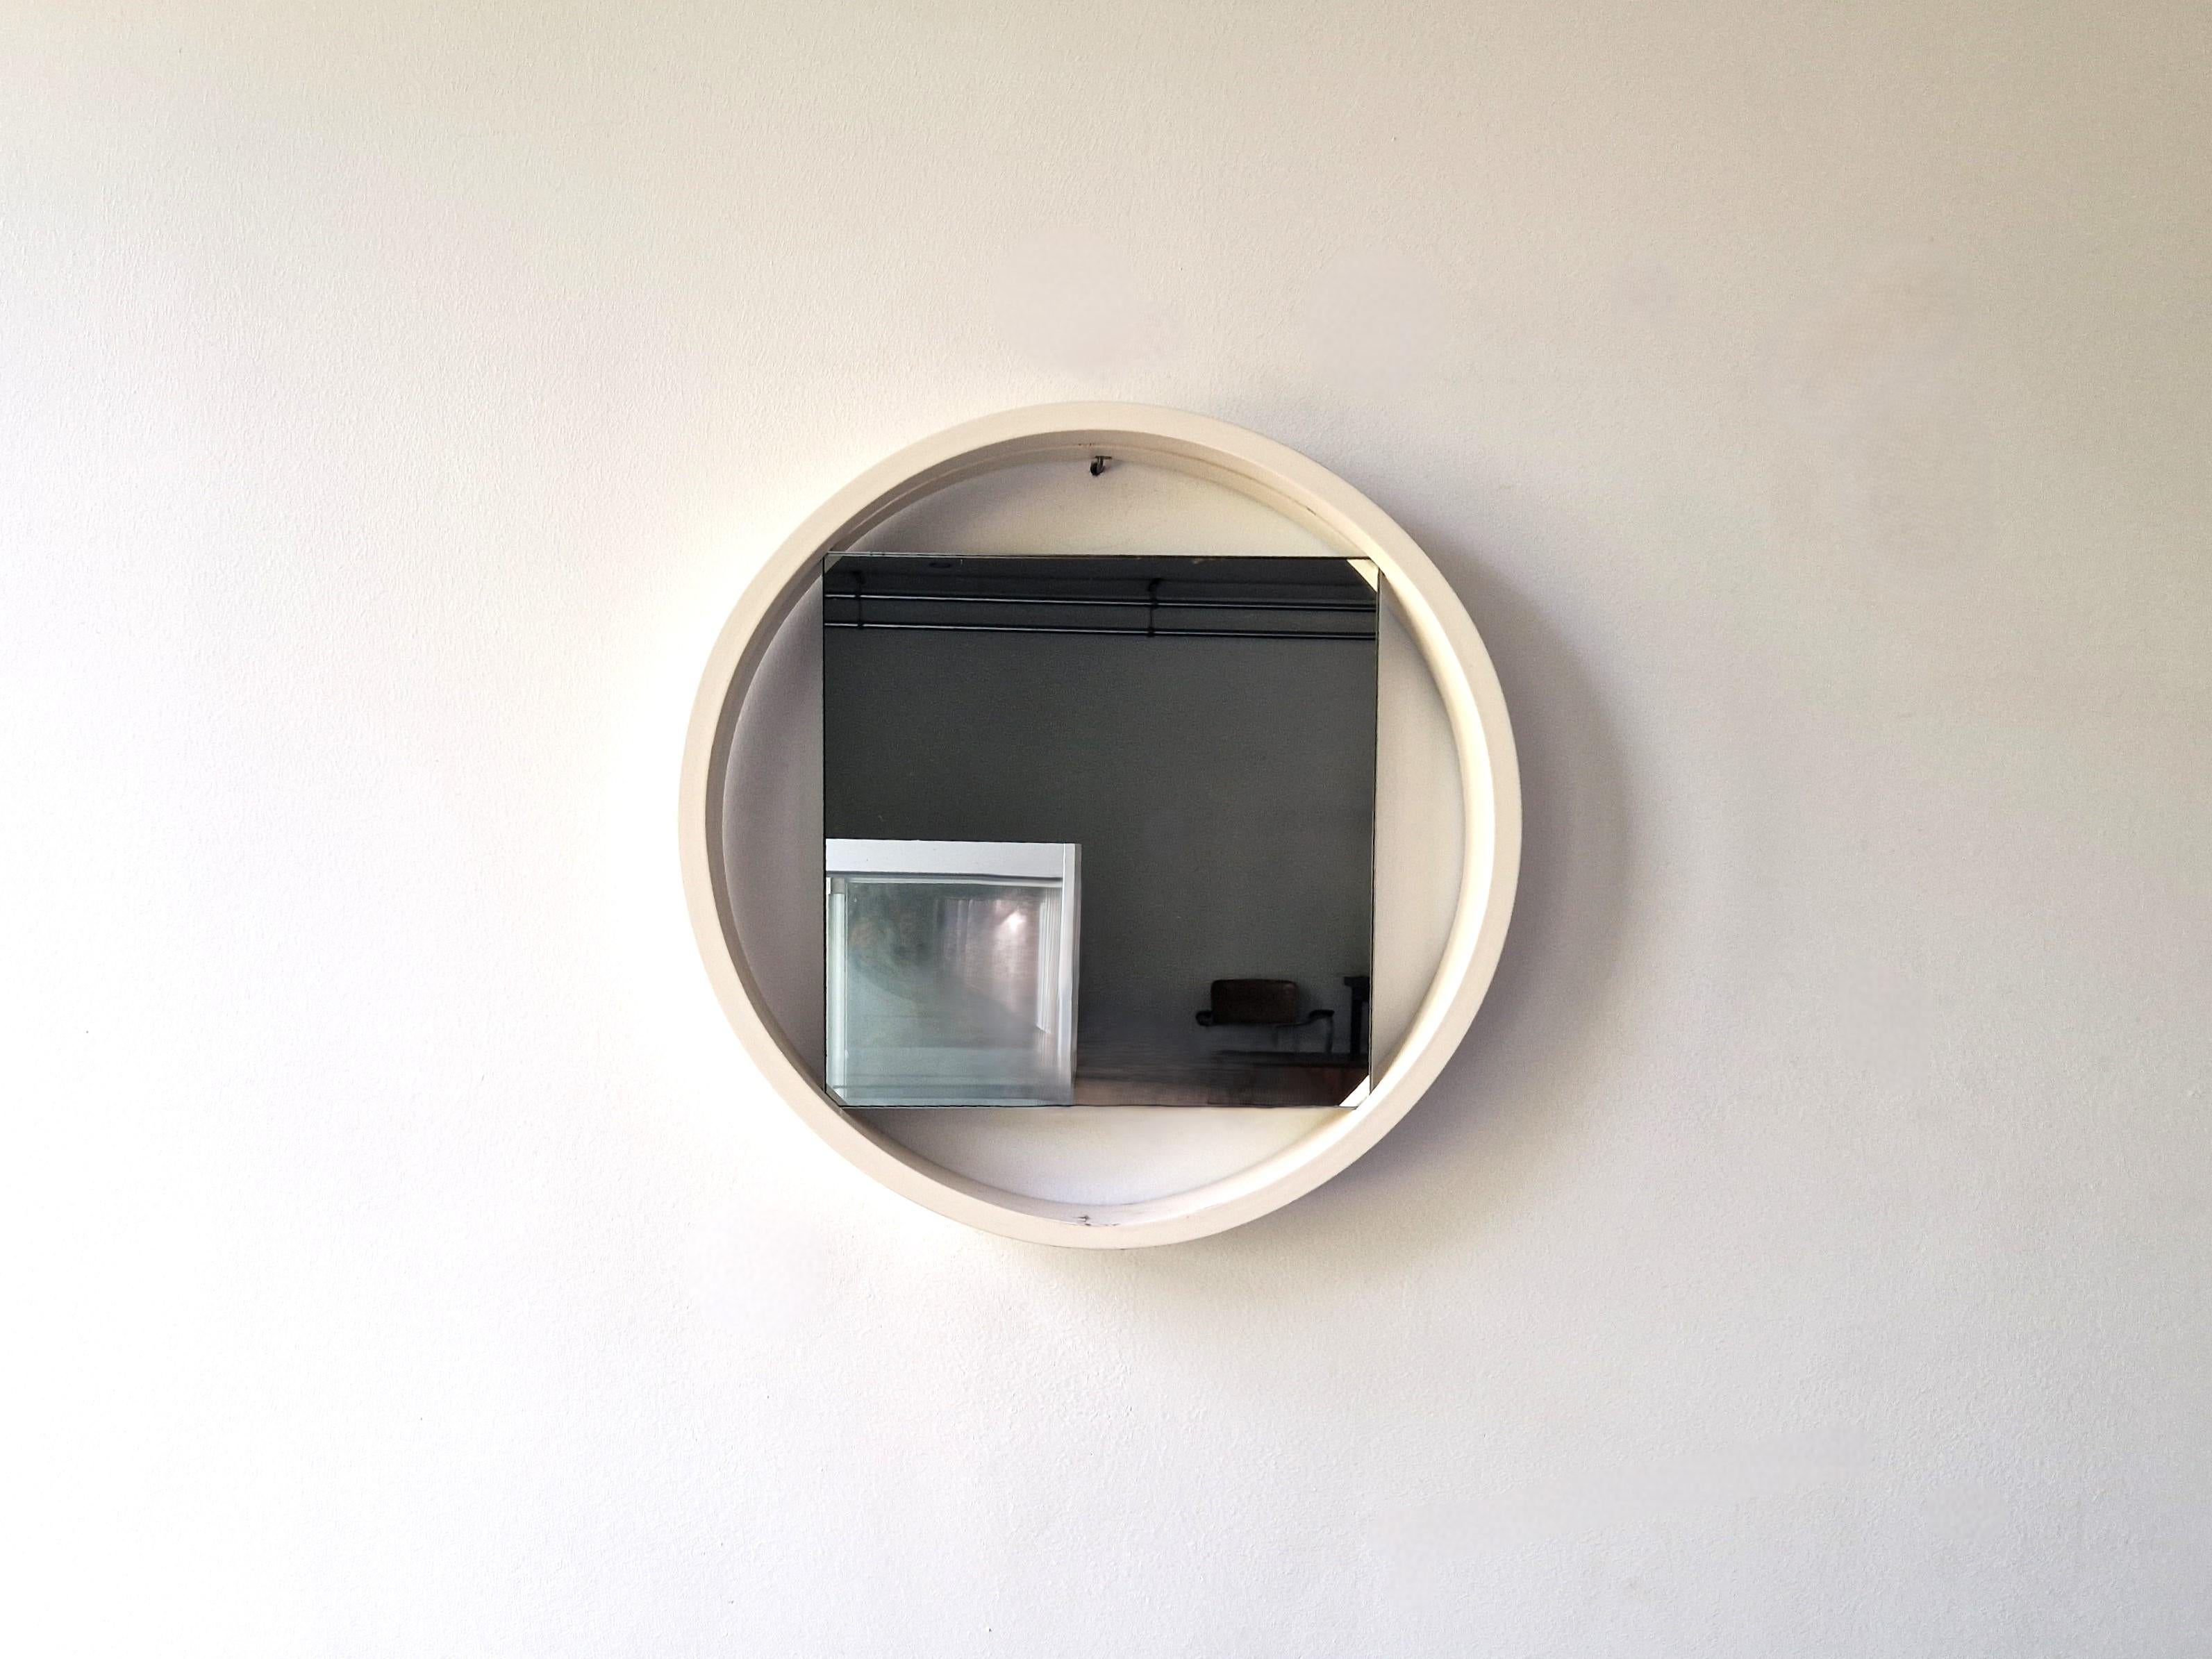 Ce miroir, modèle DZ84, a été conçu par Benno Premsela pour 't Spectrum. Un design minimaliste et très excitant. Le contraste et l'aspect ludique du cadre rond et du miroir carré en font une icône du design néerlandais. Ce modèle date de 1956 et a